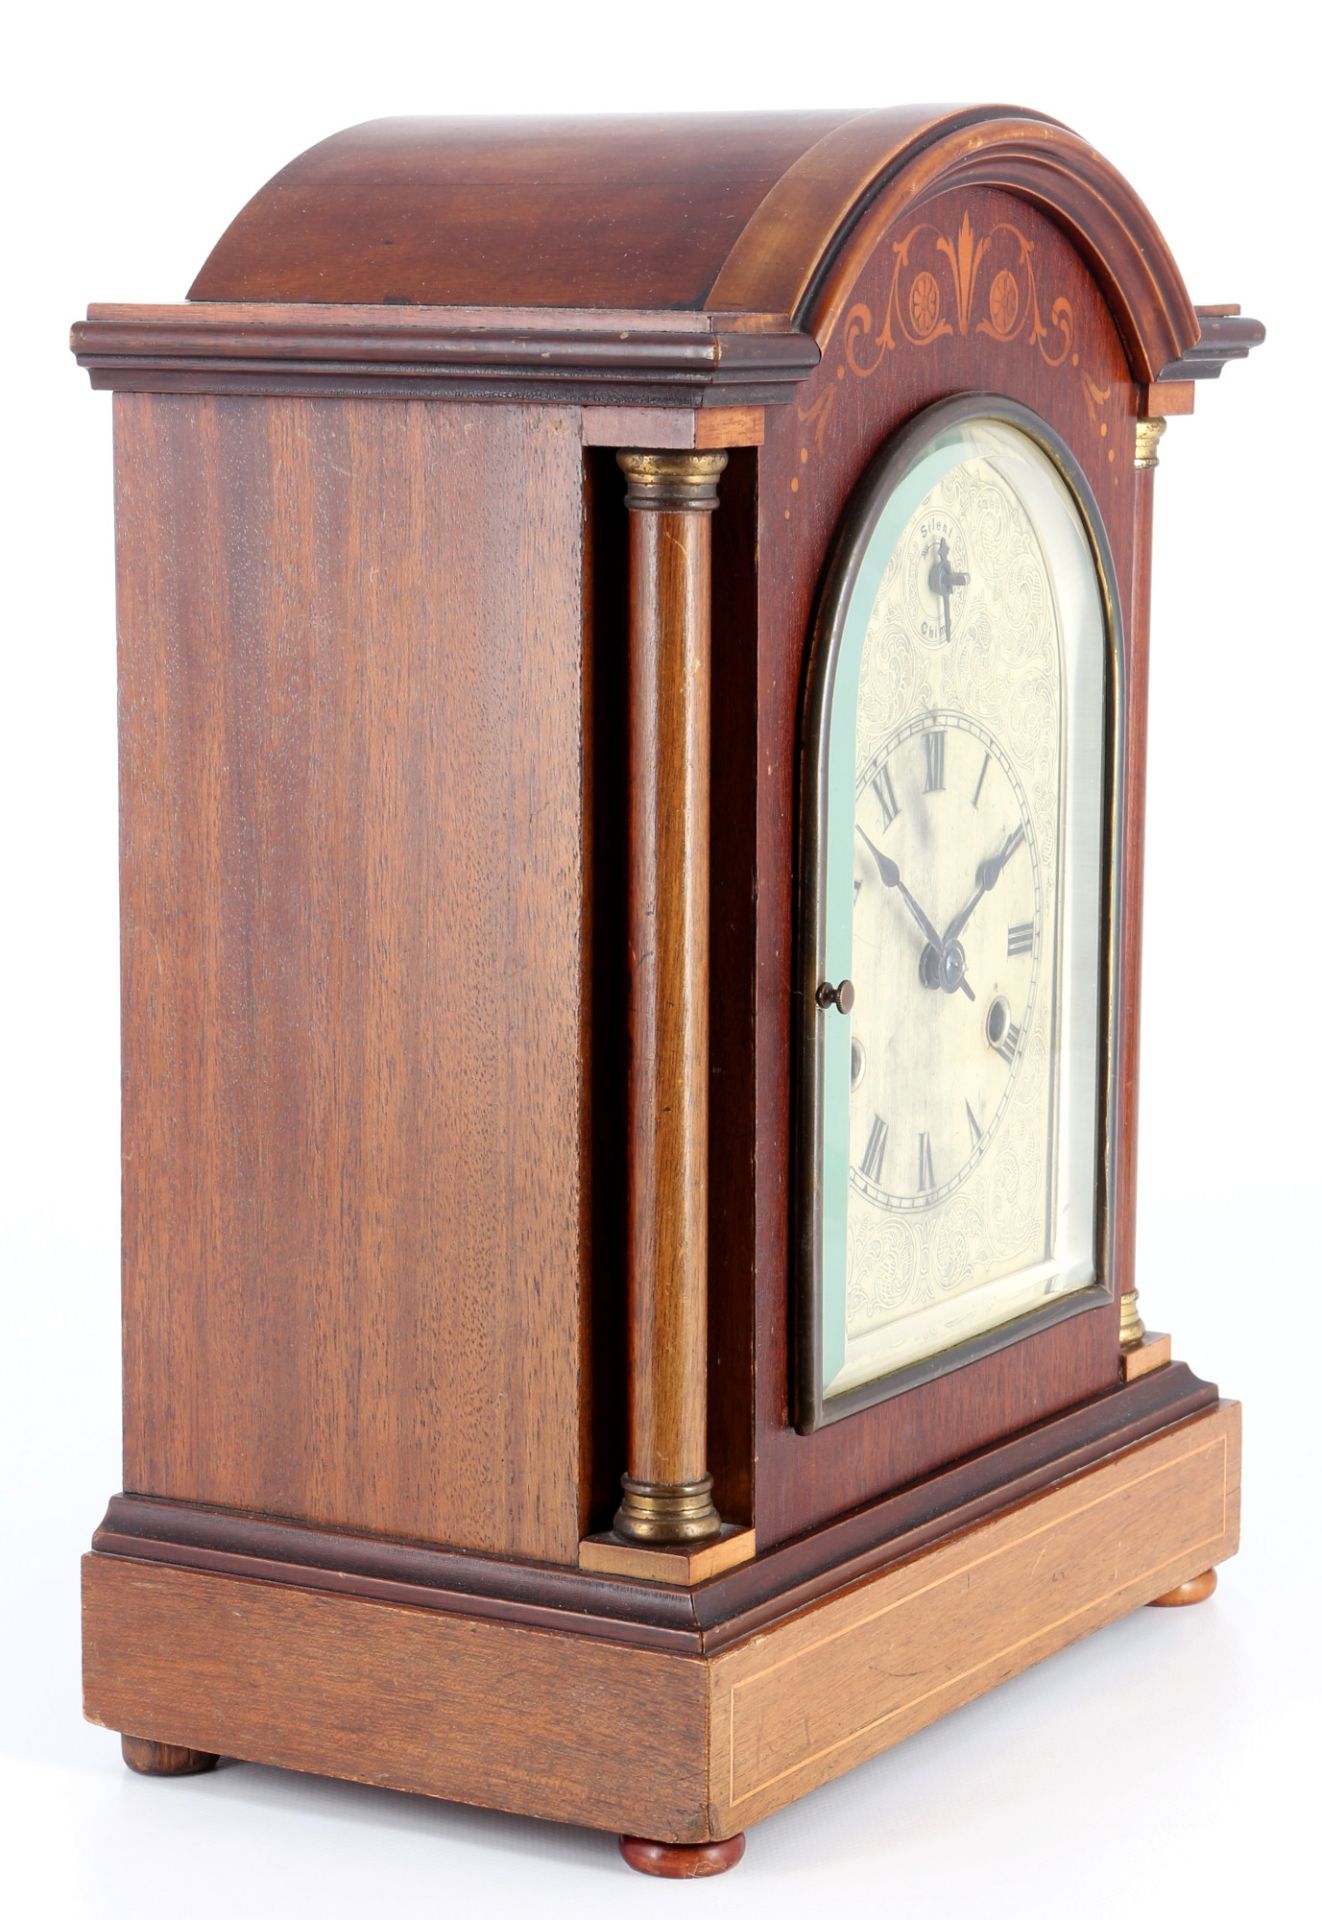 Mantel clock around 1900, Pfeilkreuz, Tischuhr um 1900, - Image 2 of 5